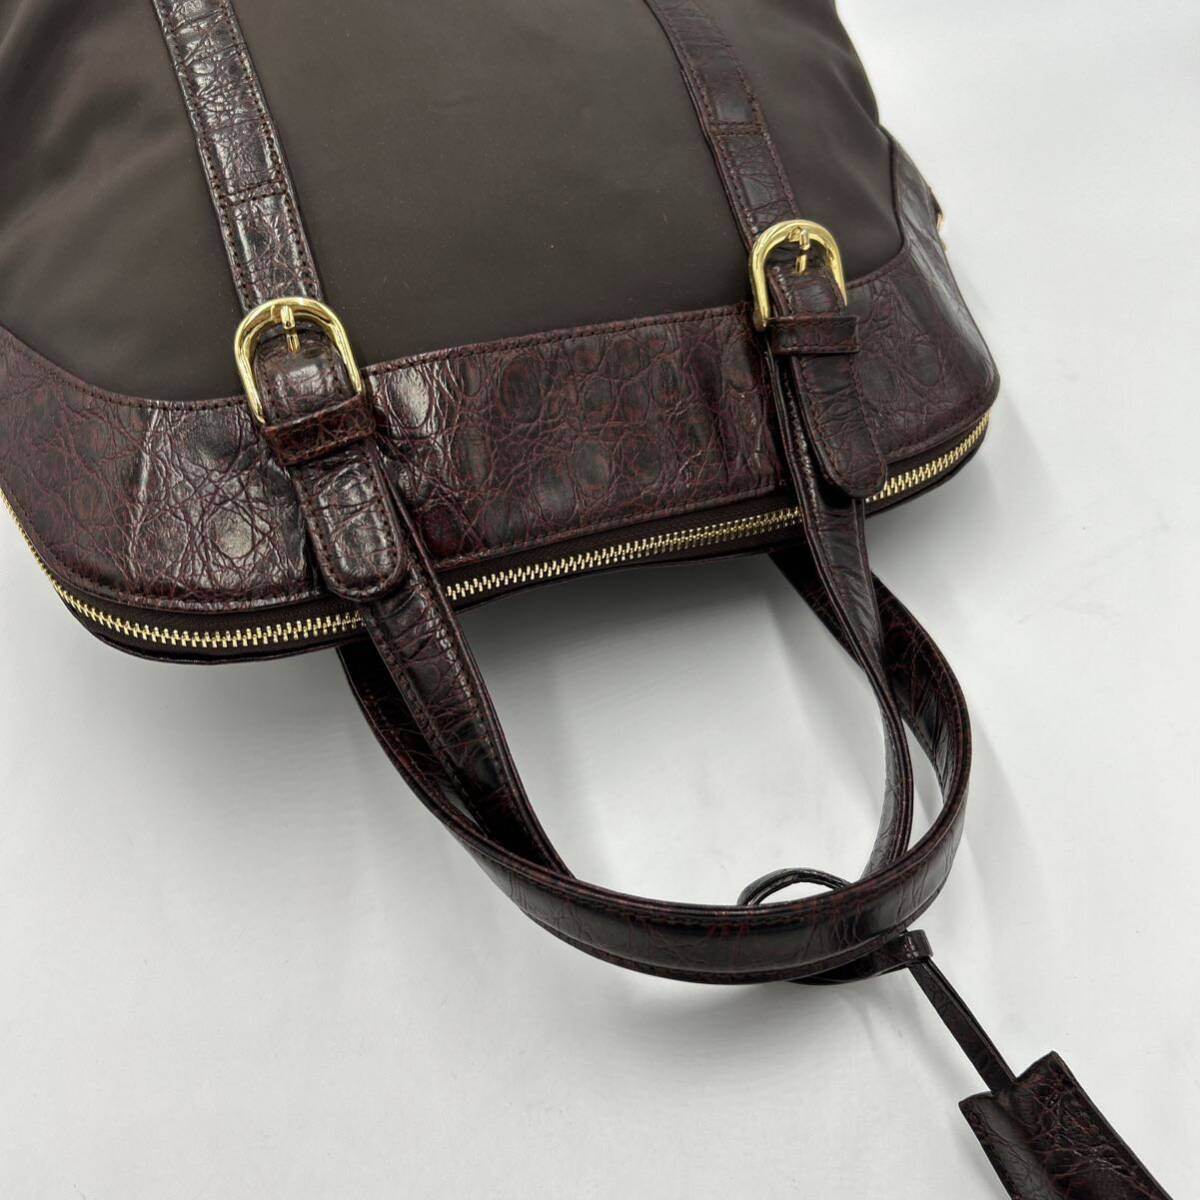 A @ 洗礼されたデザイン '高級感溢れる' LEILIAN レリアン LEATHER 切り替え トートバッグ 手提げ鞄 ハンドバッグ 婦人鞄 レディース 茶系の画像6